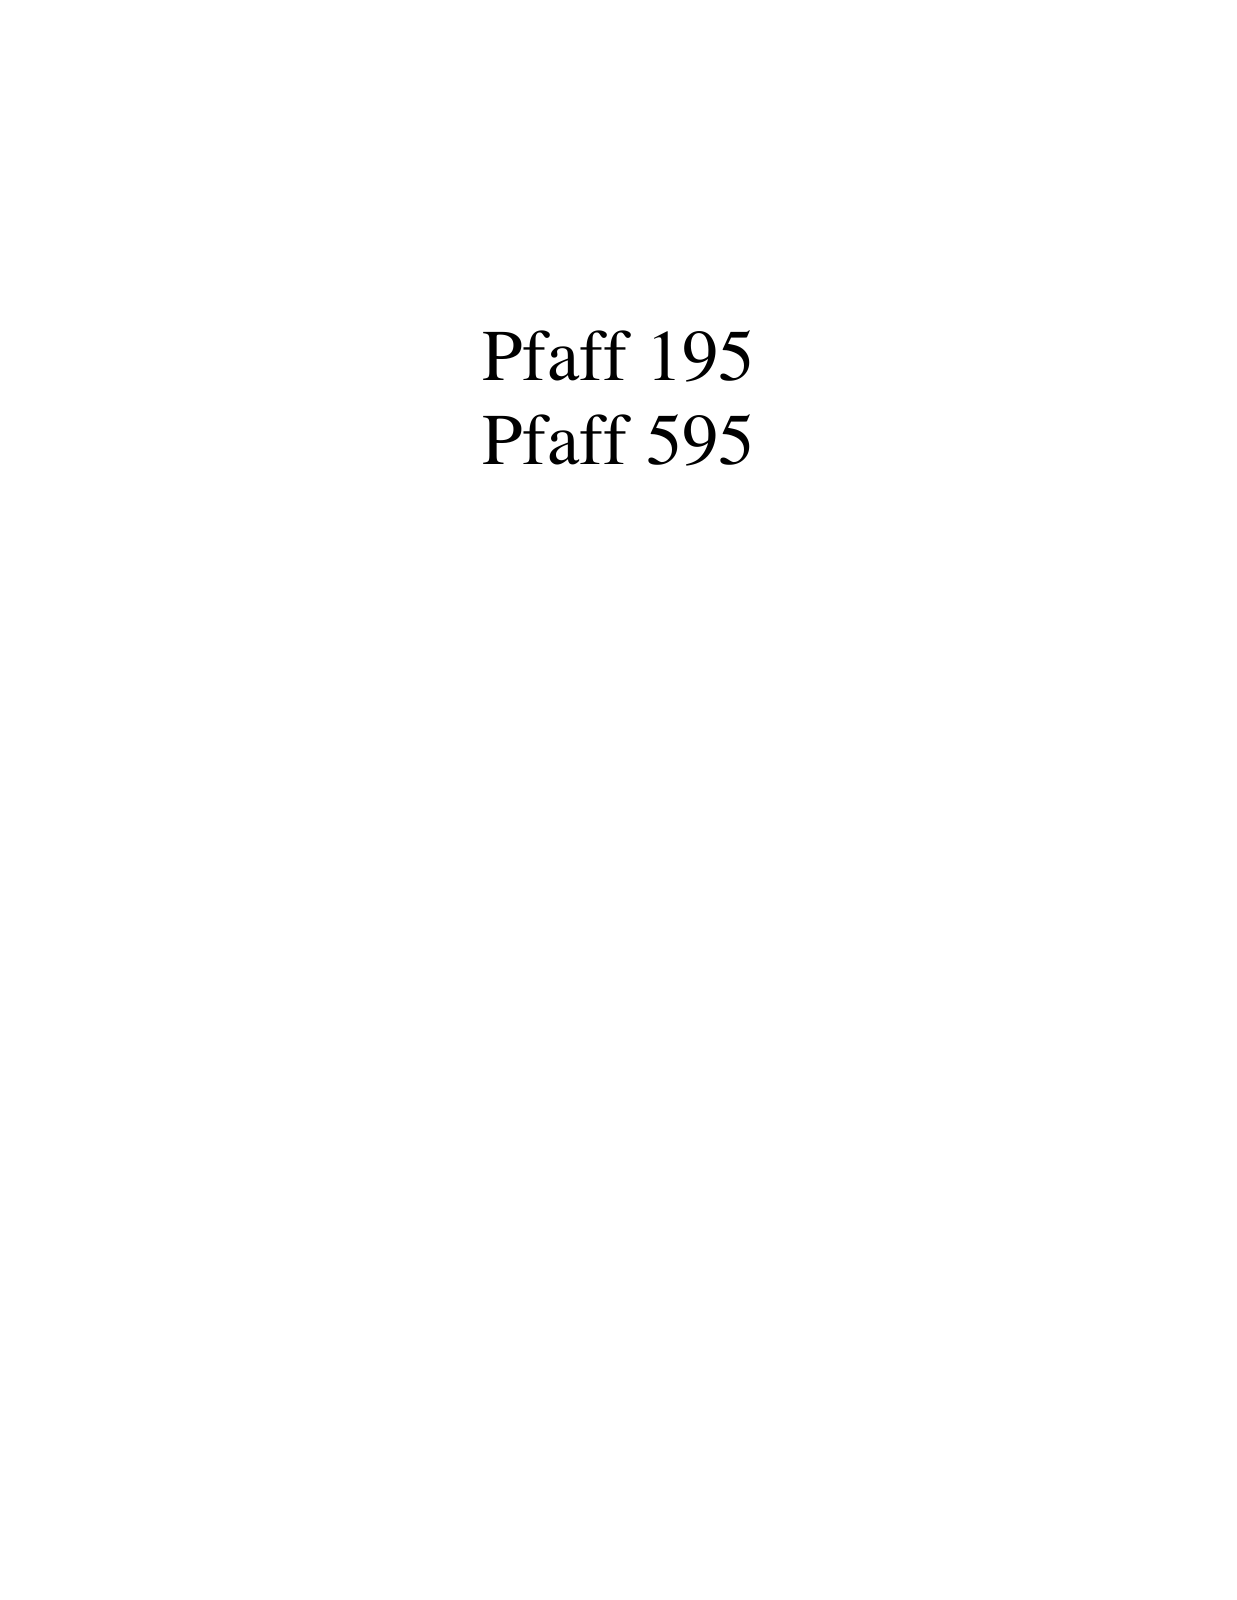 PFAFF 195, 595 Parts List